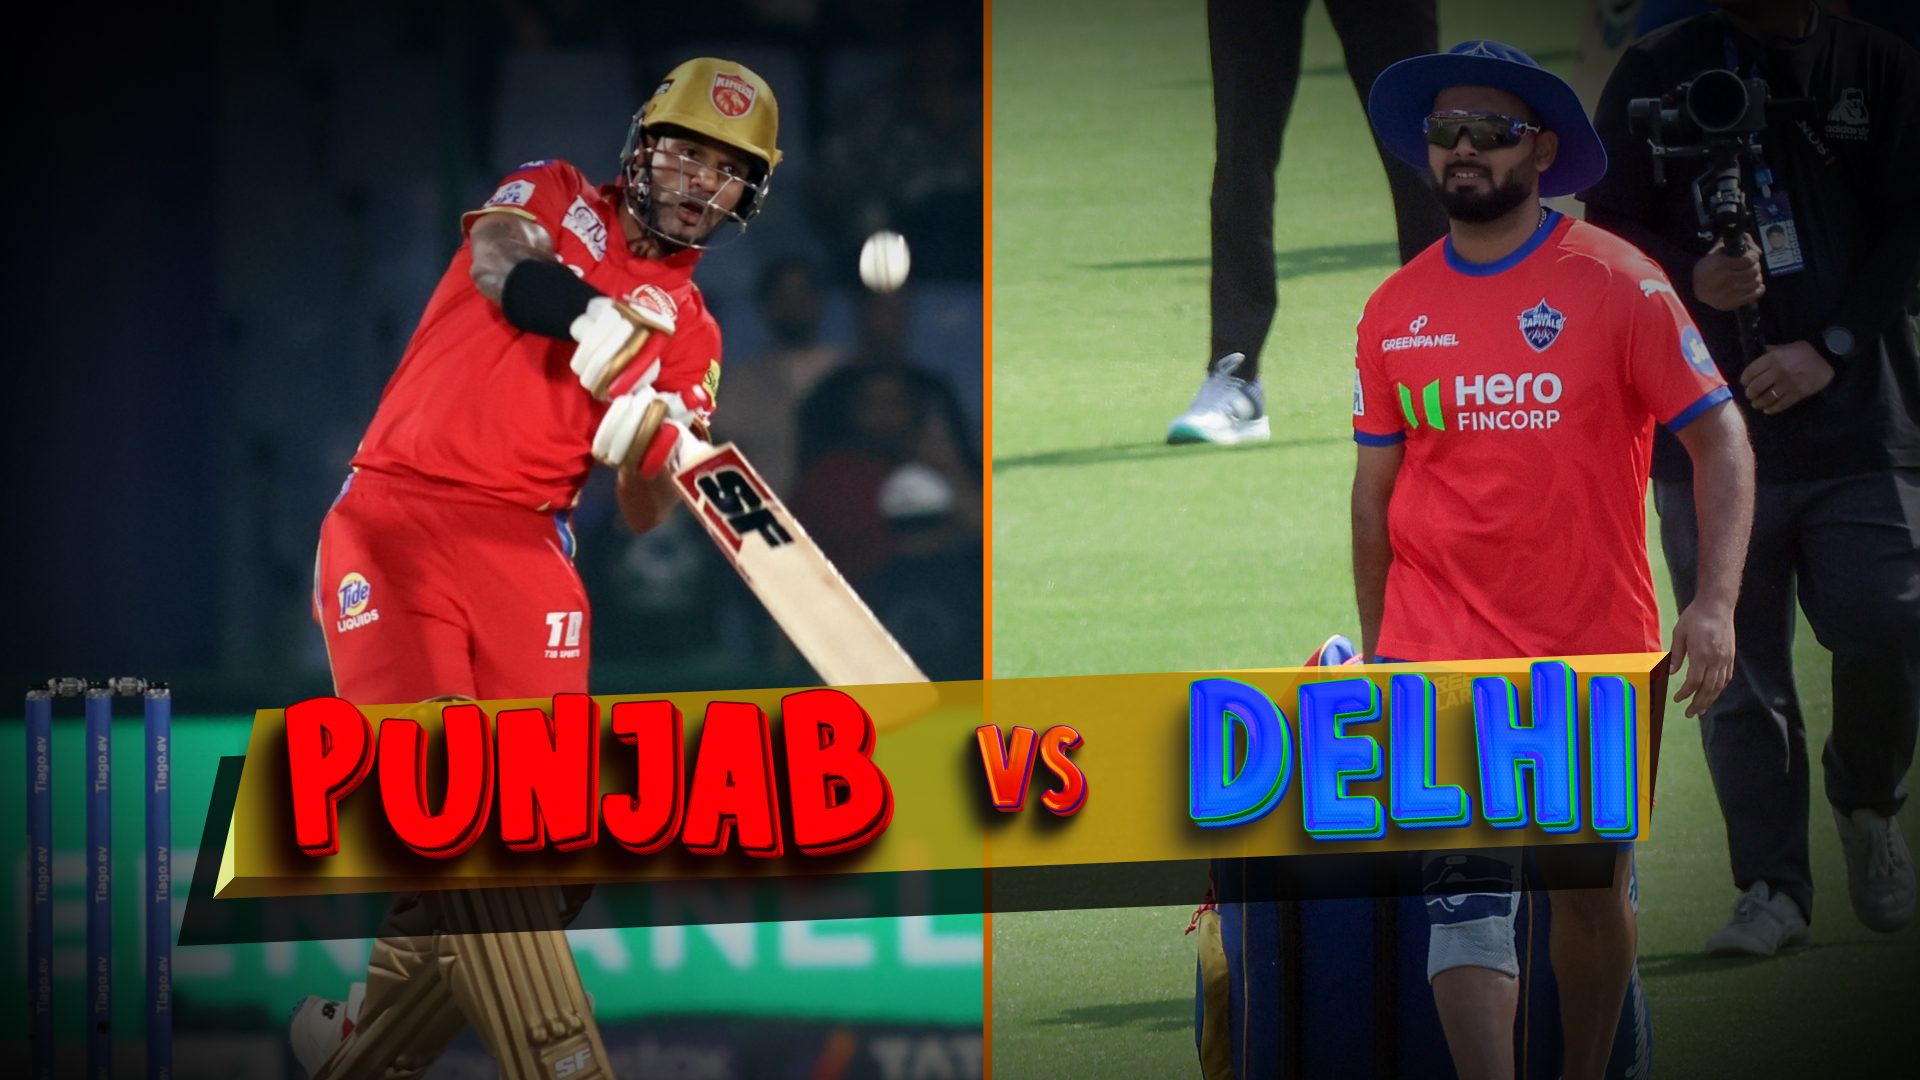 Punjab vs Delhi - Who Will Reign Supreme?